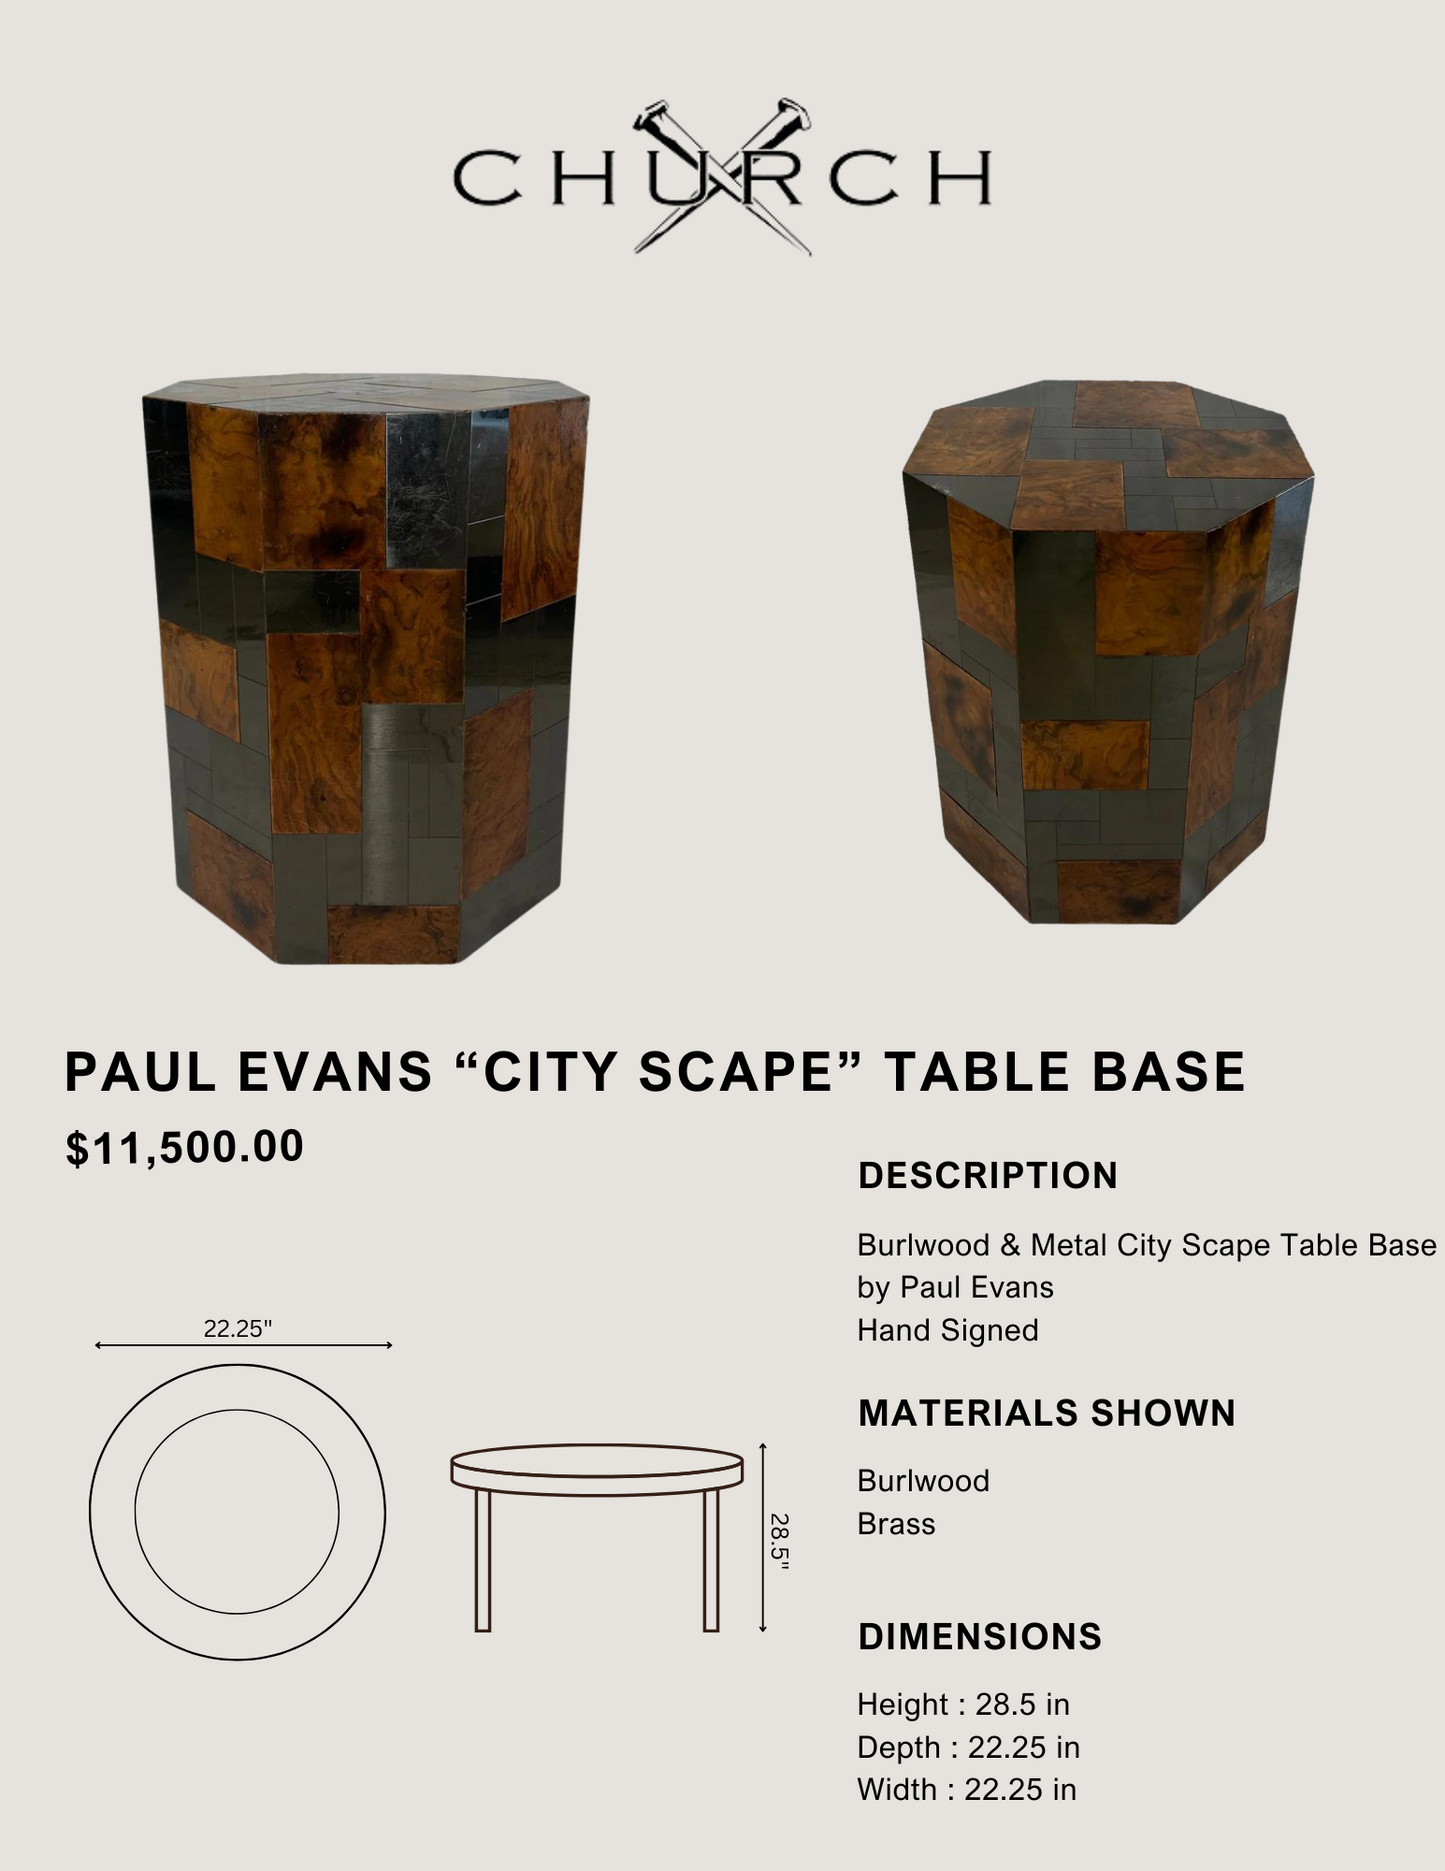 Paul Evans “City Scape” Table Base